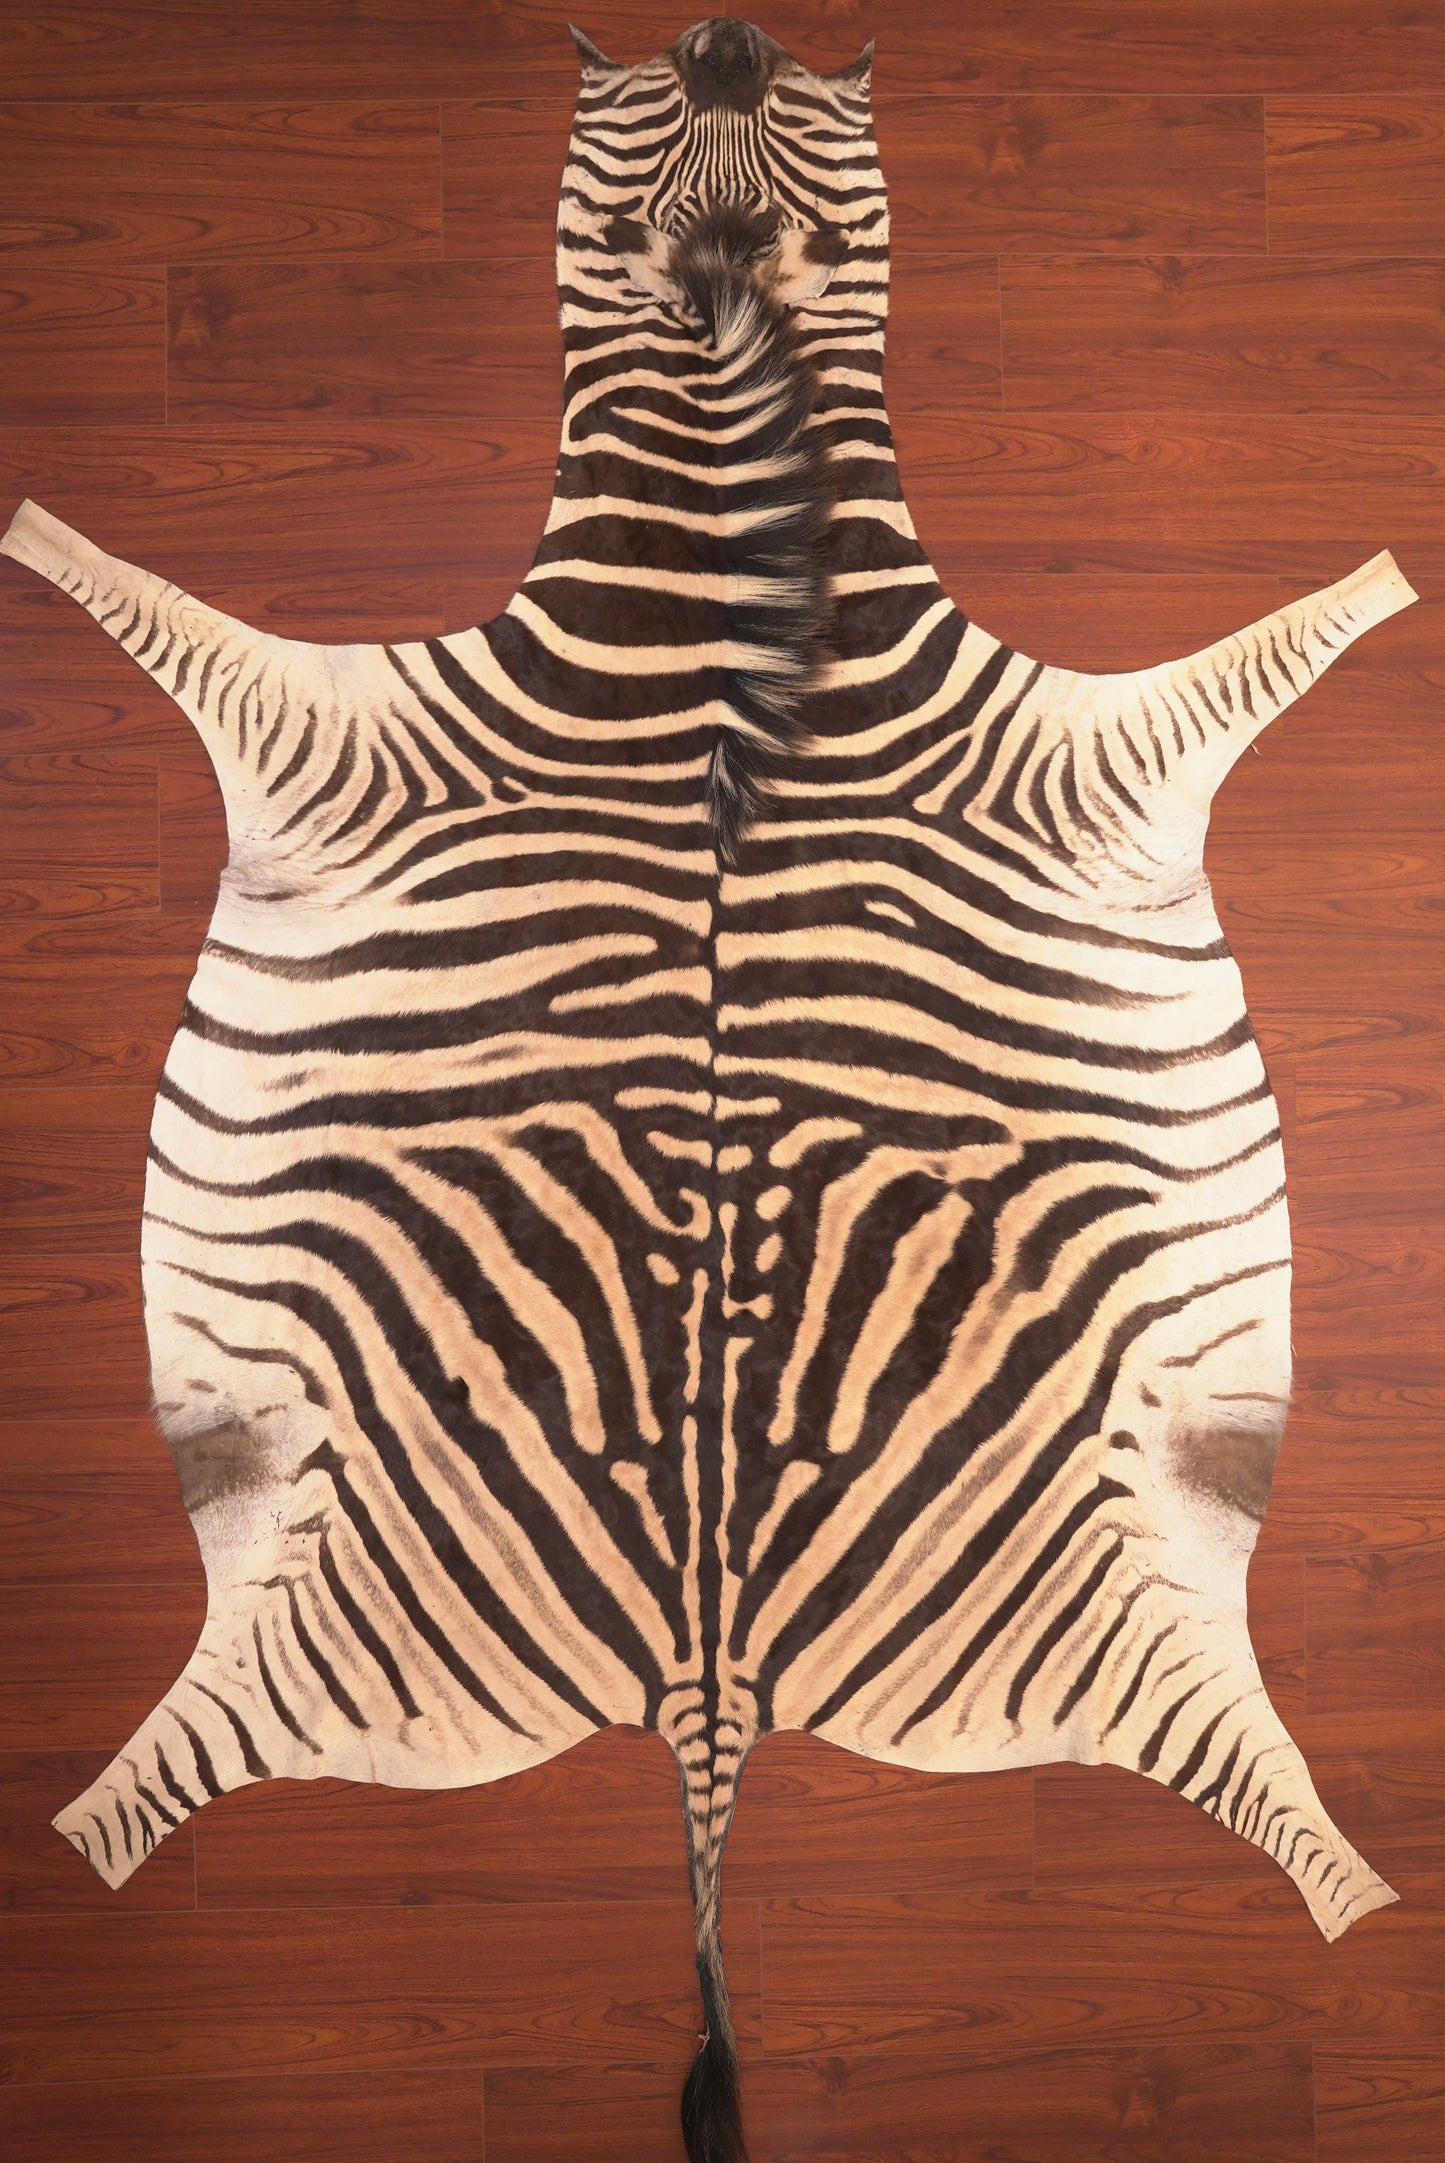 zebra hide rug animal skin carpet 